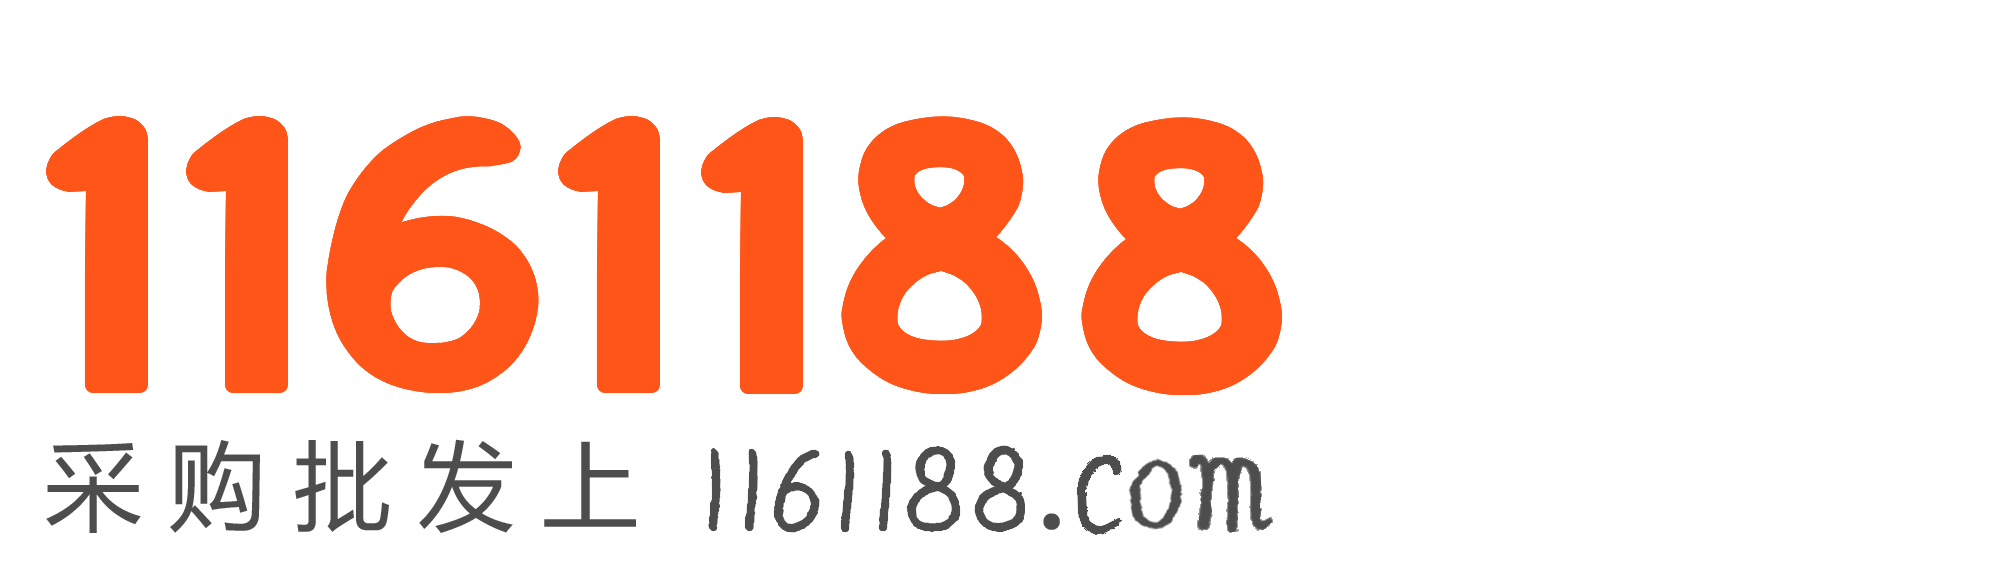 1161188 商机网-采购批发上1161188.com